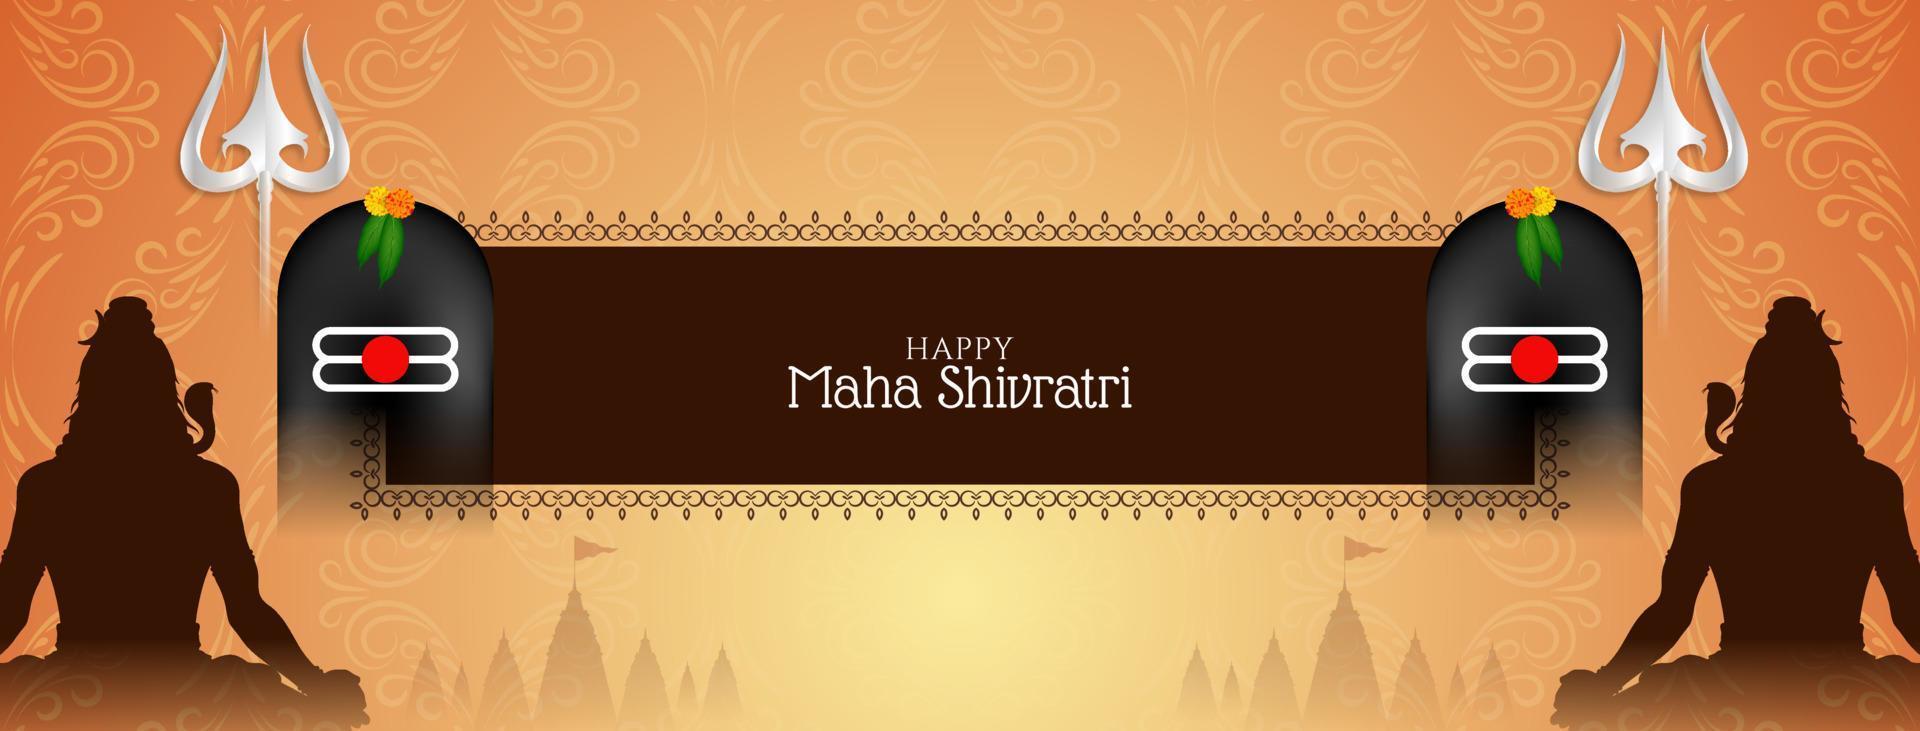 glücklich maha Shivratri kulturell Herr Shiva Anbetung Festival Banner vektor